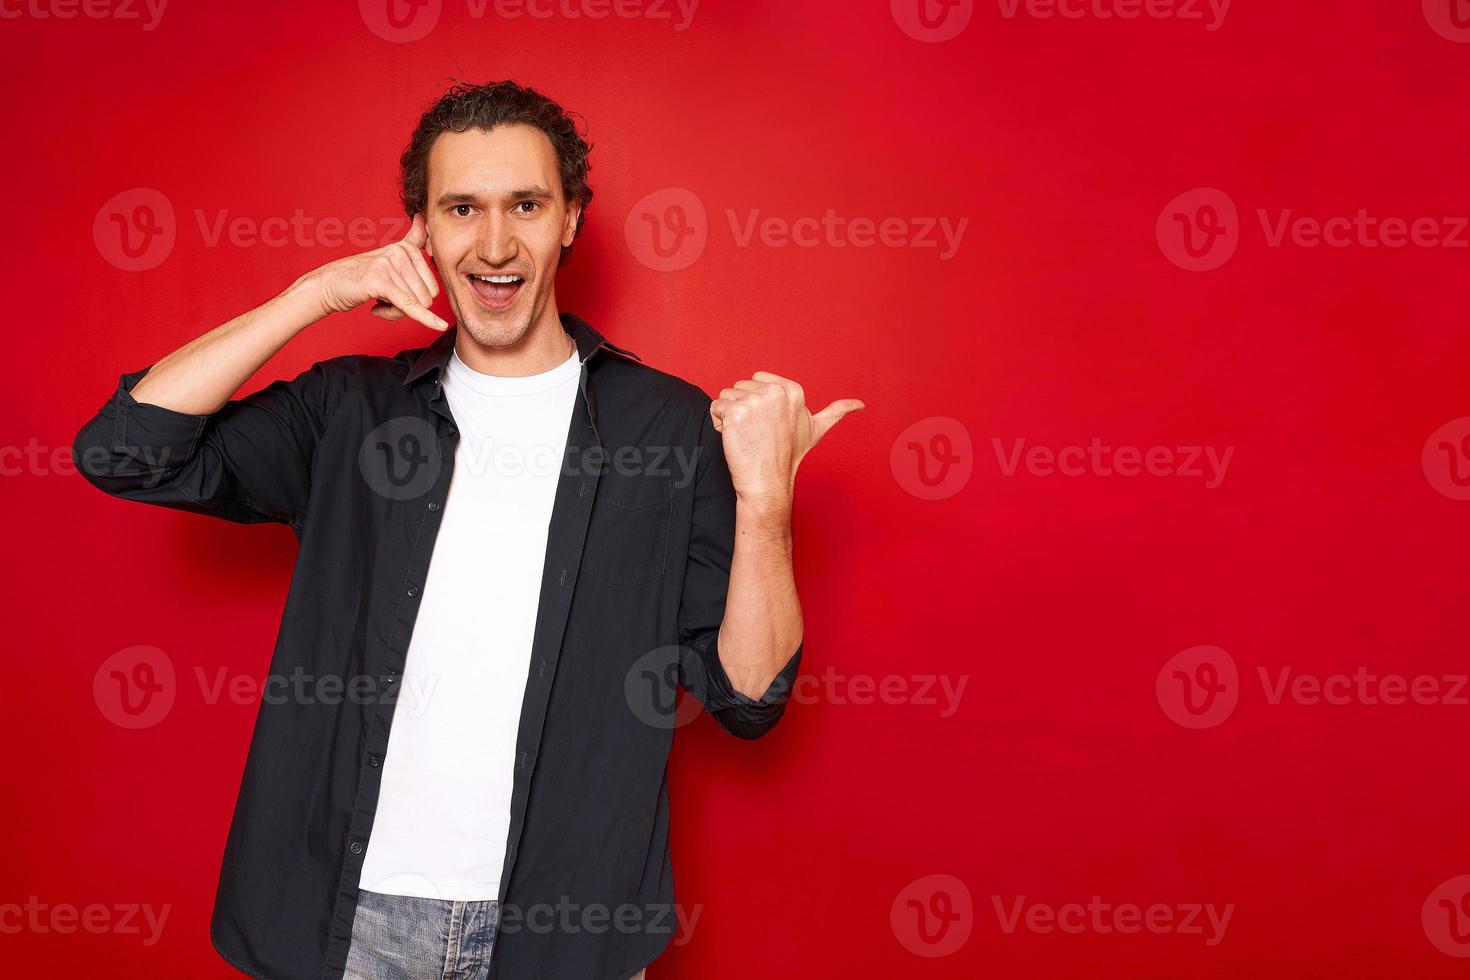 handtecken ring mig. porträtt av ung leende man pekar med tummen på ledigt tomt utrymme för en reklamtext och föreställer en telefonlur med handen. isolerad på en röd studio bakgrund foto